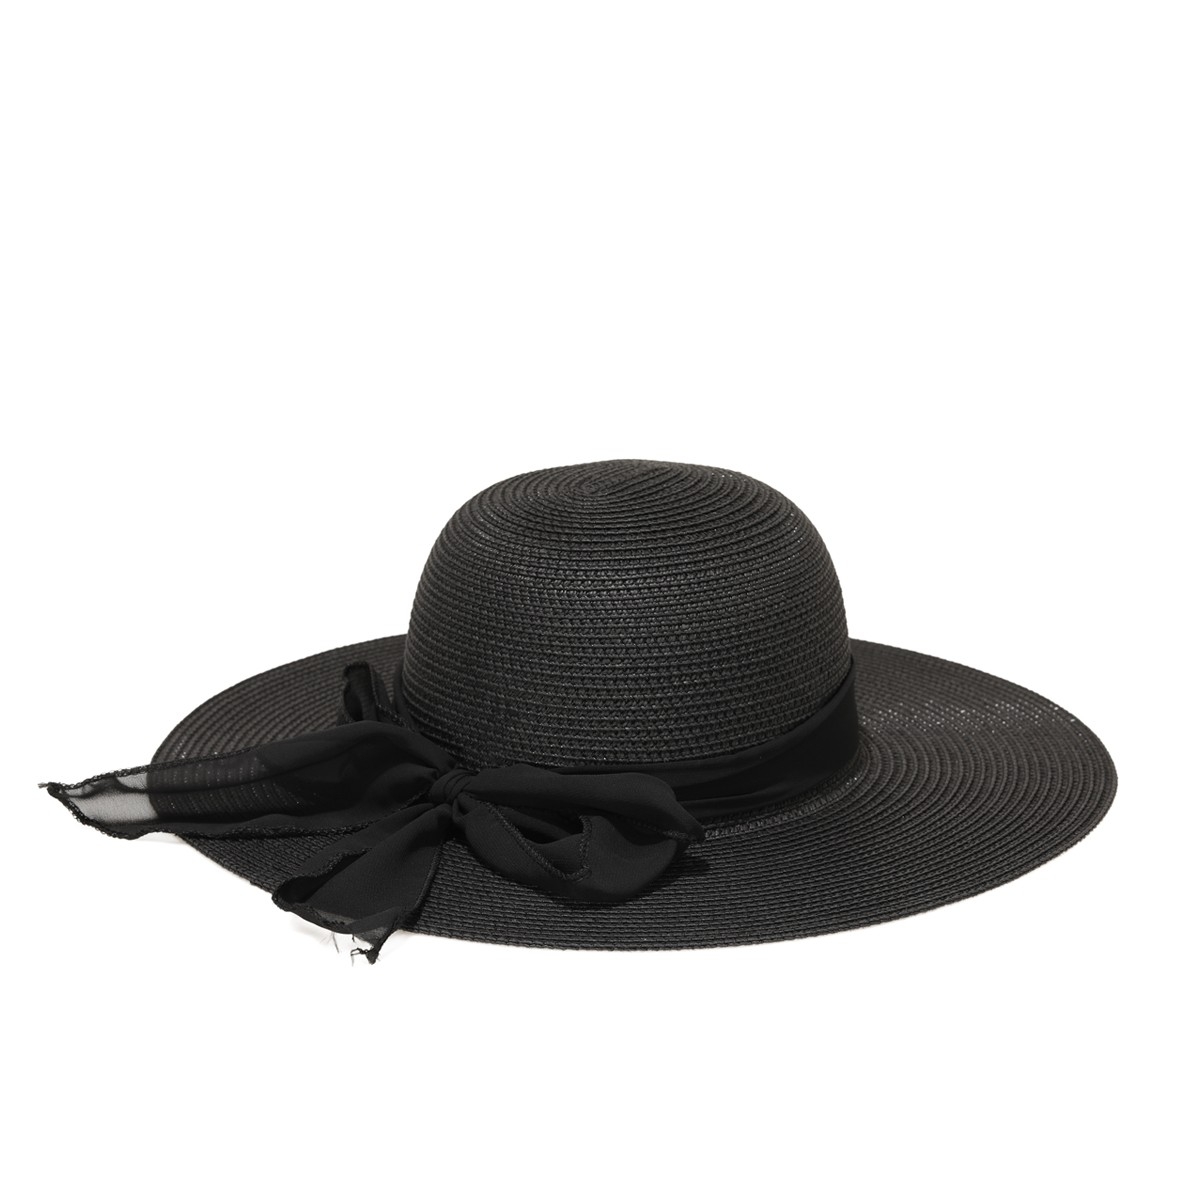 Flo KURDELA DETAY HASIR ŞAPKA Siyah Kadın Şapka. 1